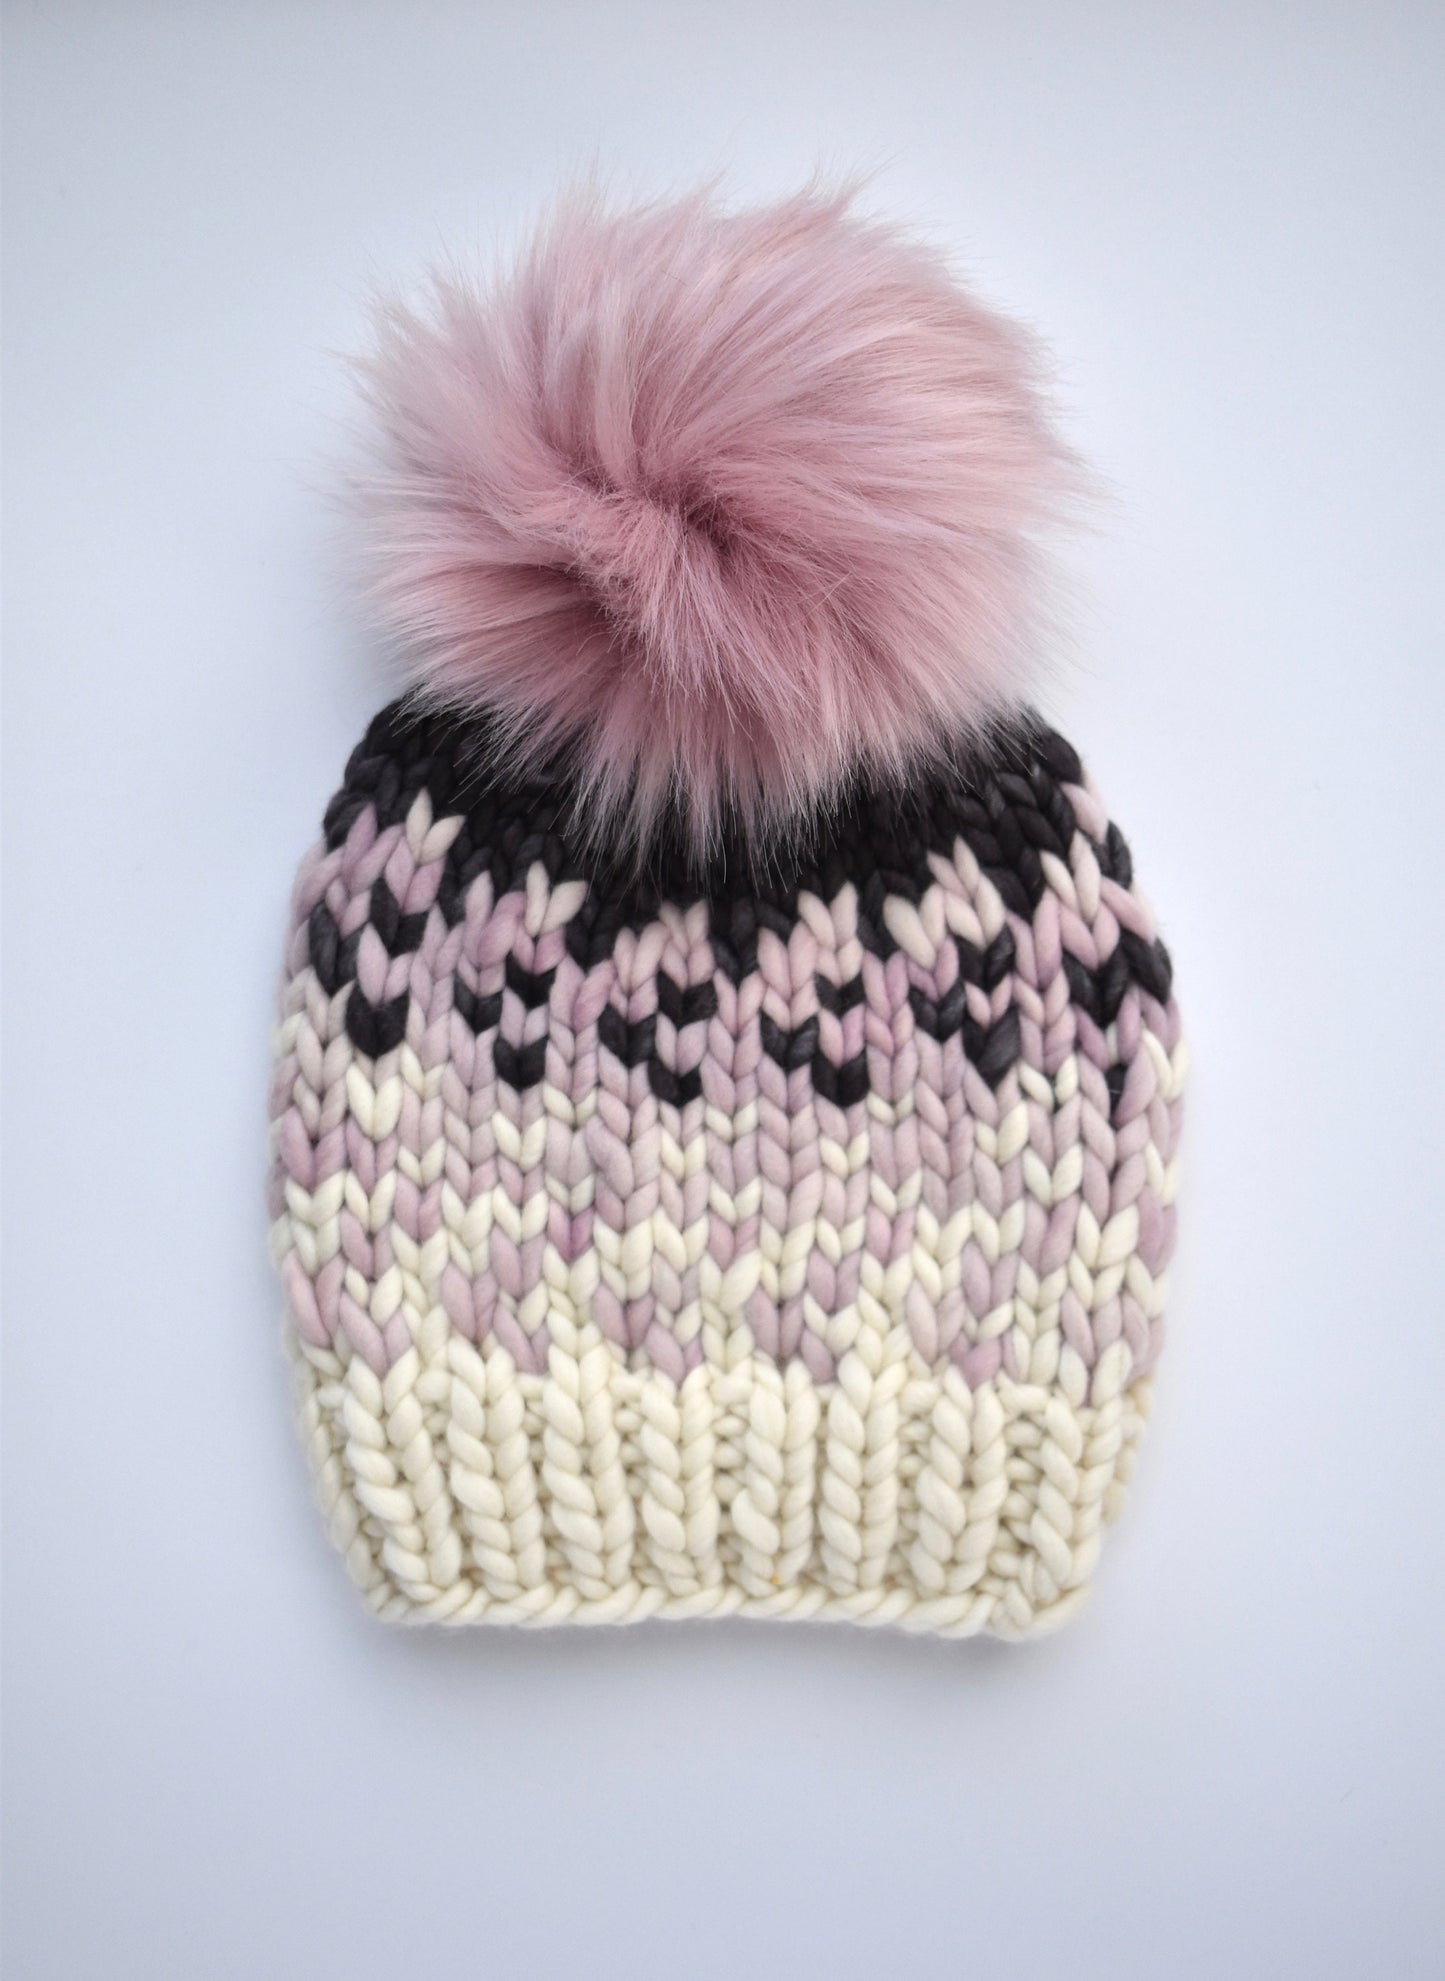 KNITTING PATTERN: Sunrise Hat in 5 Sizes | Easy Fair Isle Knit Hat Pattern | Super Bulky Yarn Scrap Yarn Pattern | Ombre Knitting Pattern